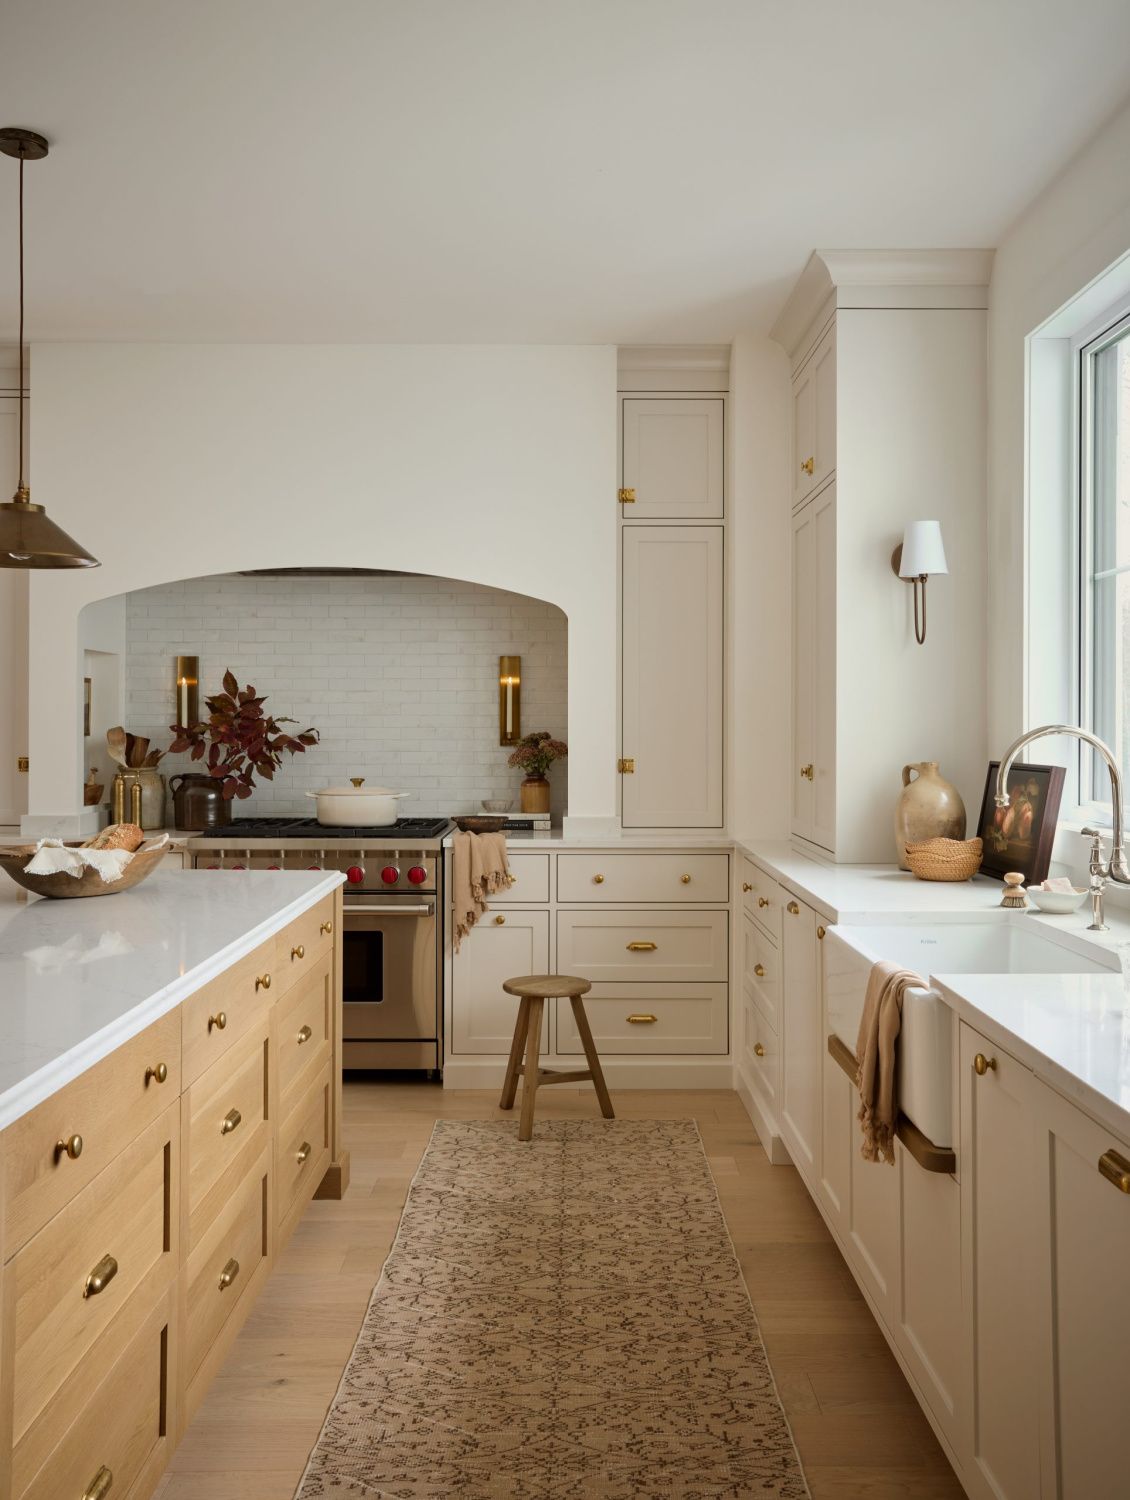 Beautiful Oak kitchen cabinets